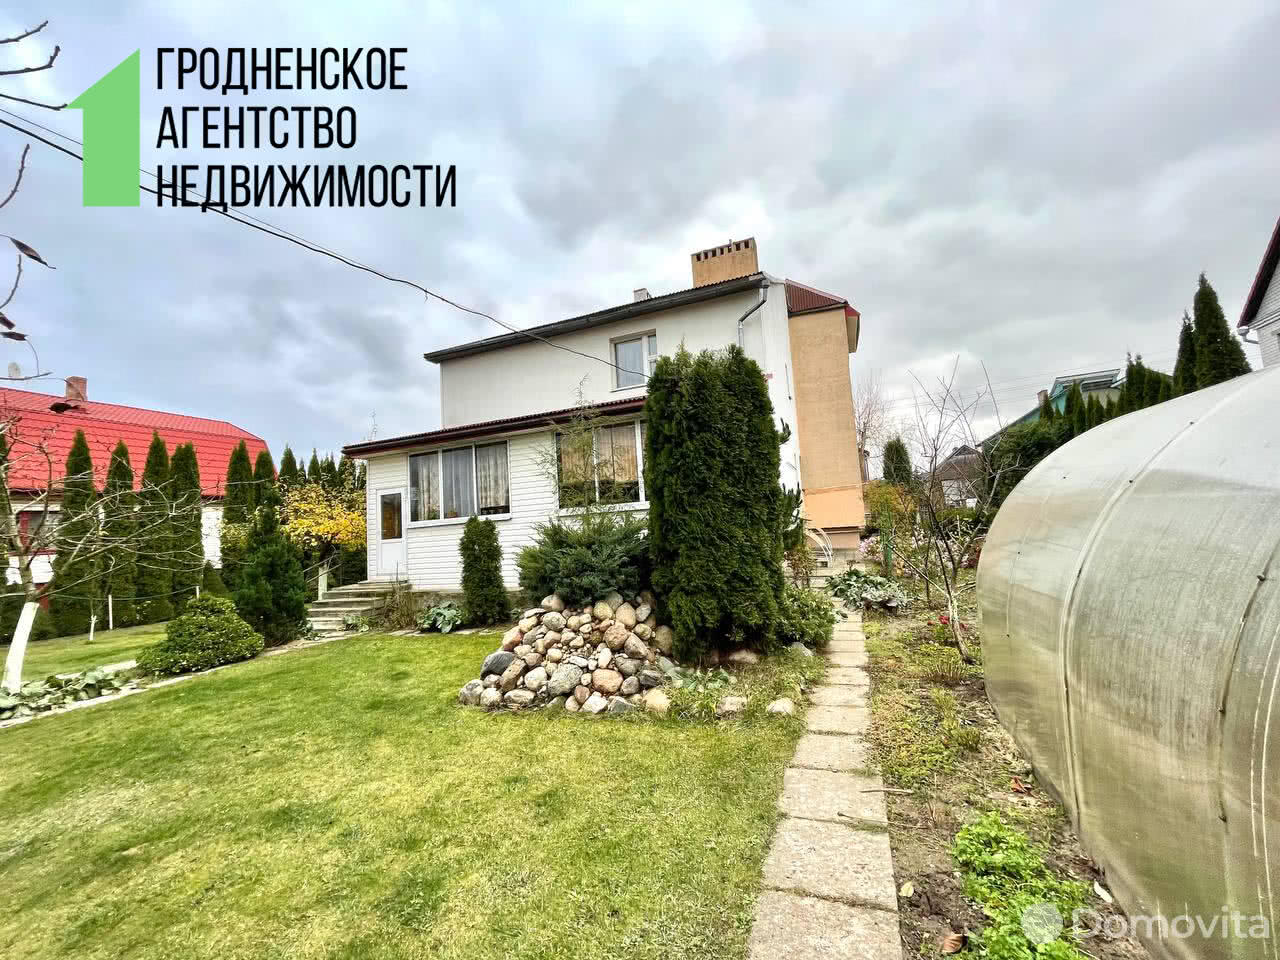 Продажа 2-этажного дома в Гродно, Гродненская область ул. Сулистровского, 85000USD - фото 1